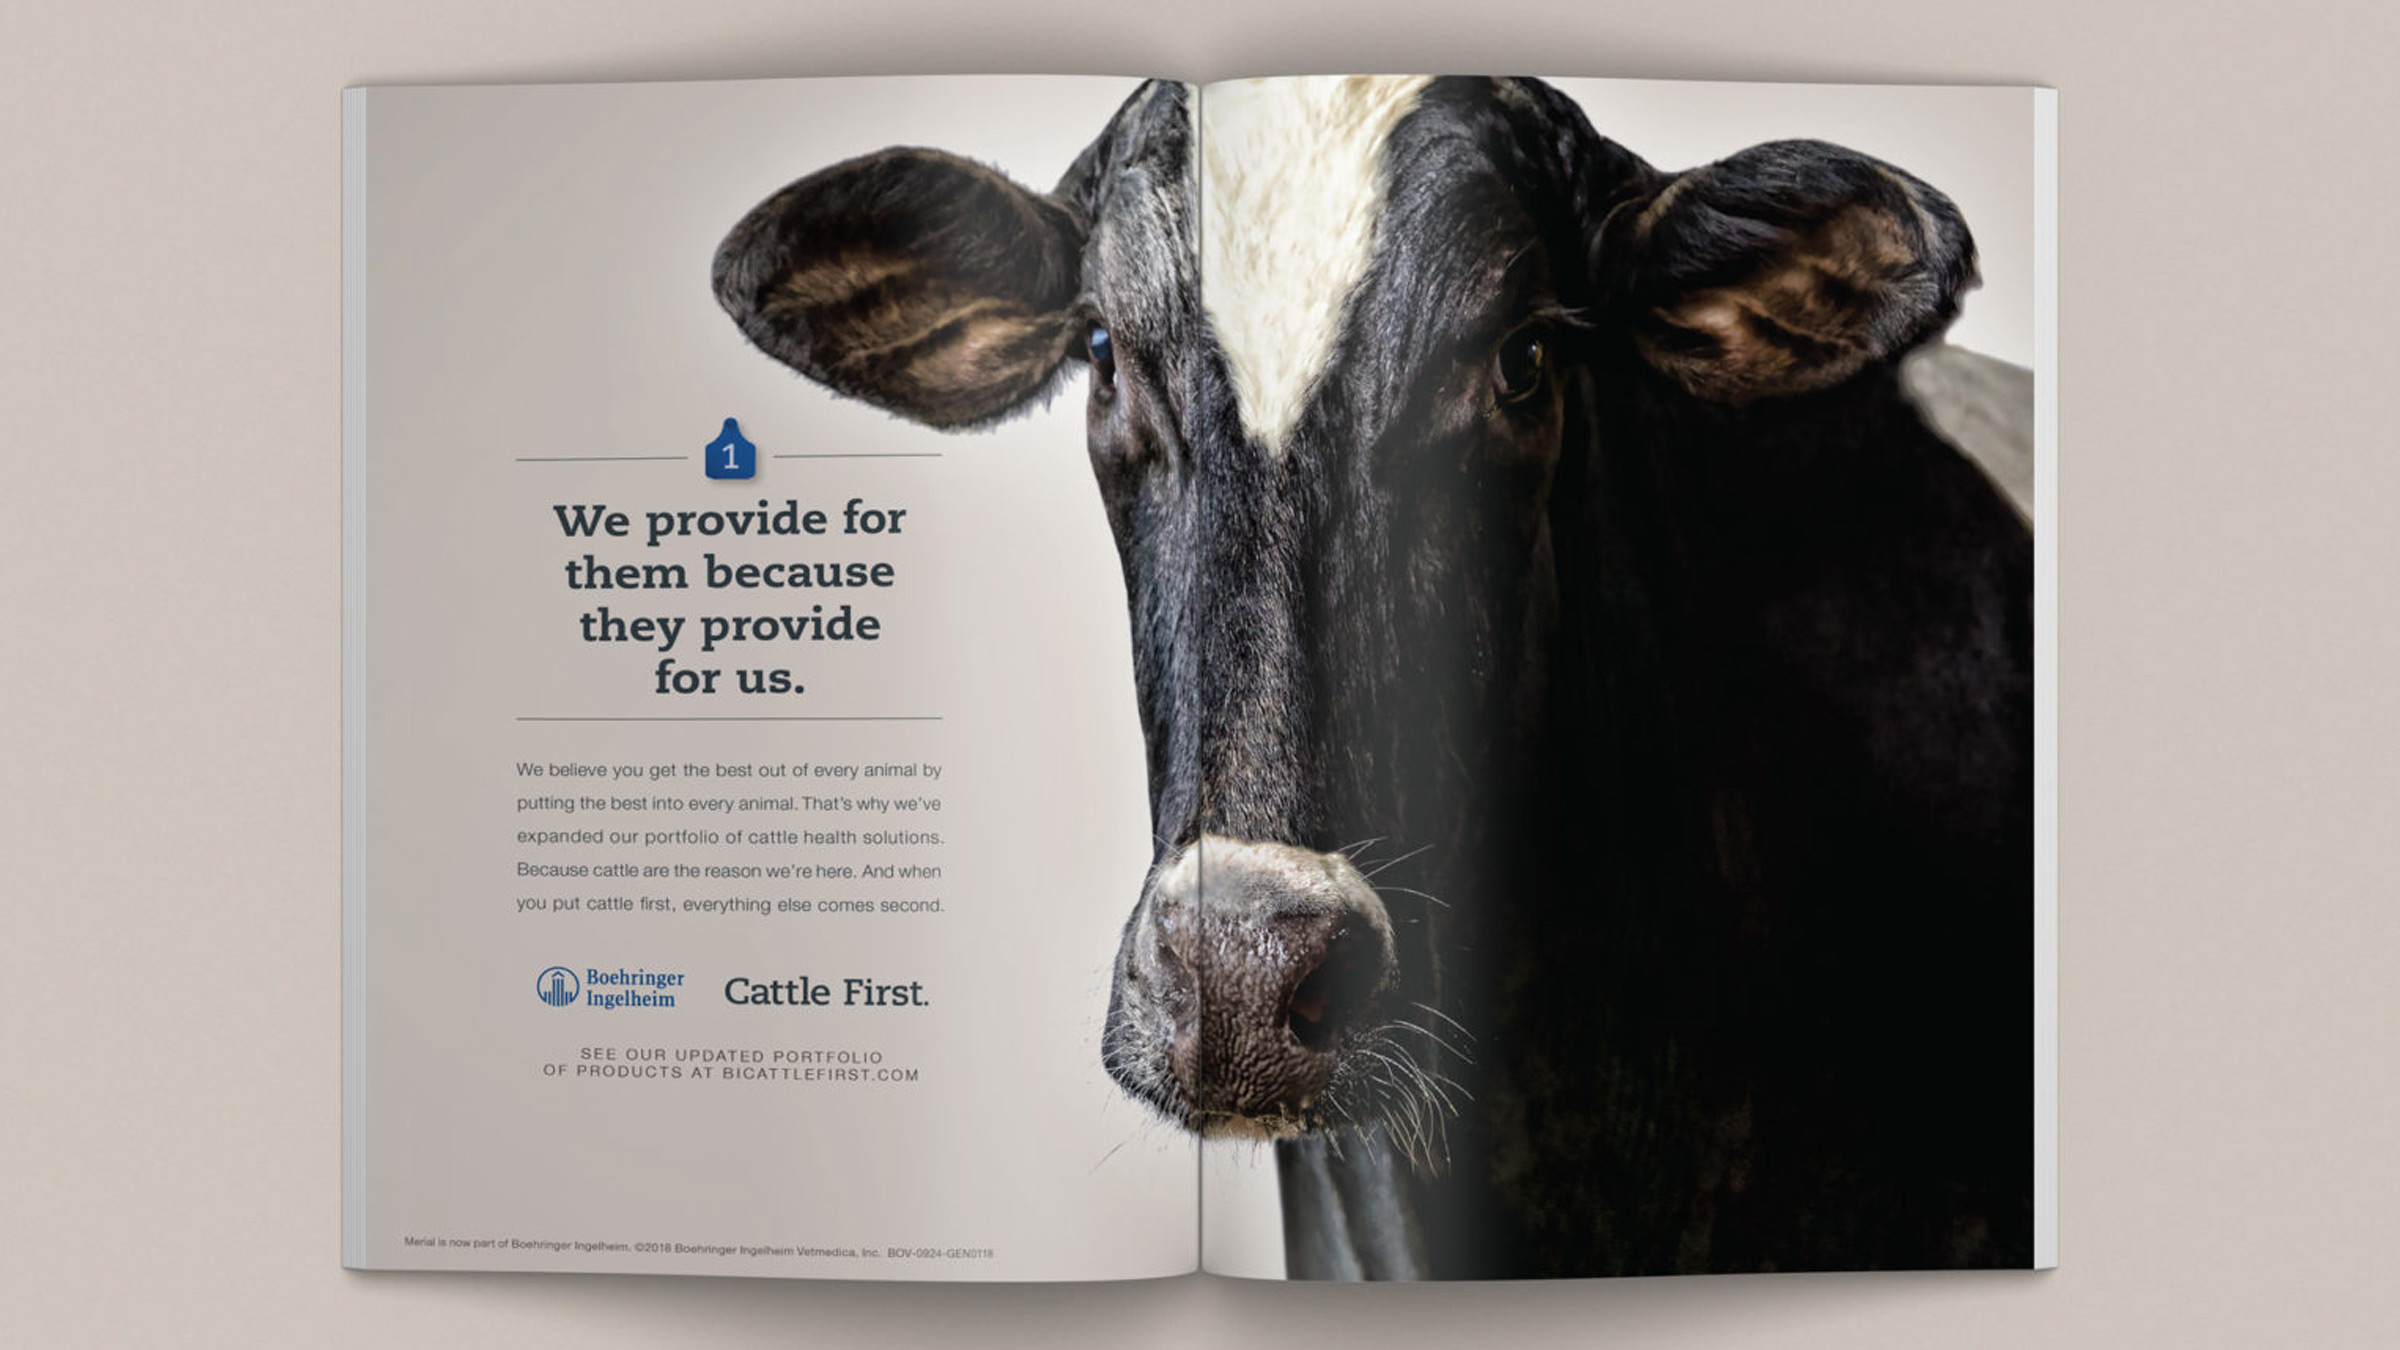 Boehringer Ingelheim Cattle First magazine ad